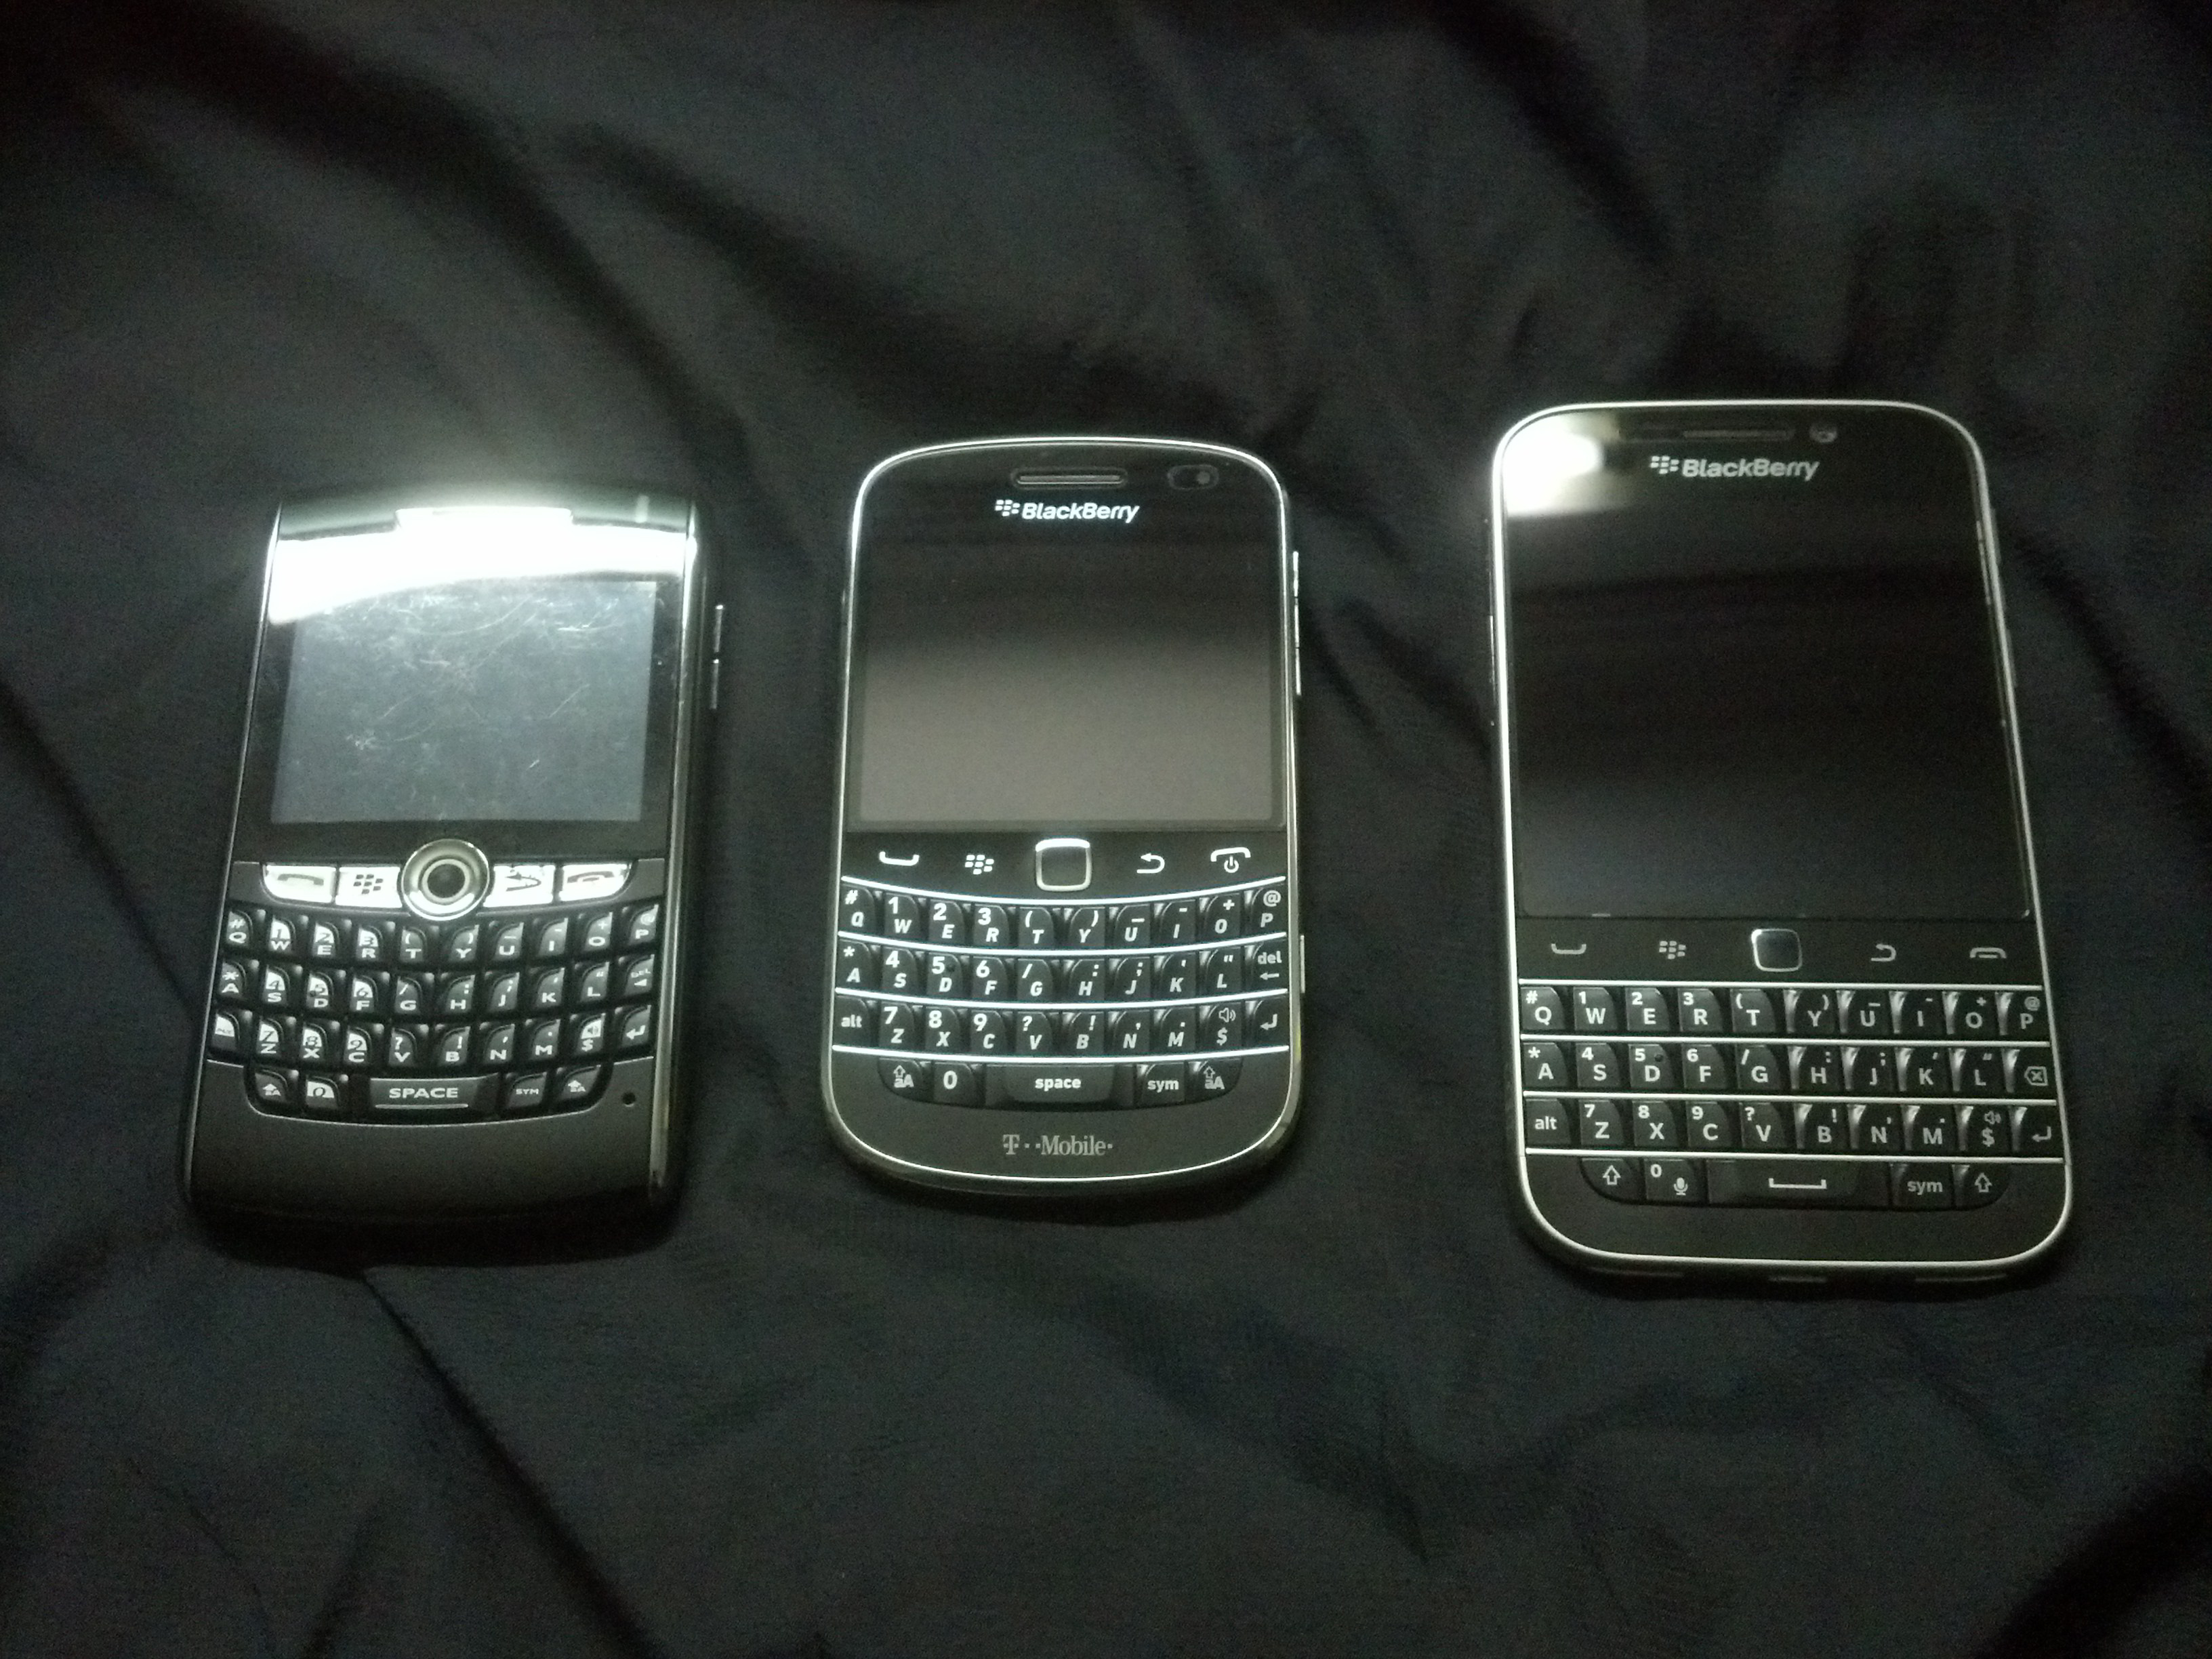 Nextel Blackberry Phone Models